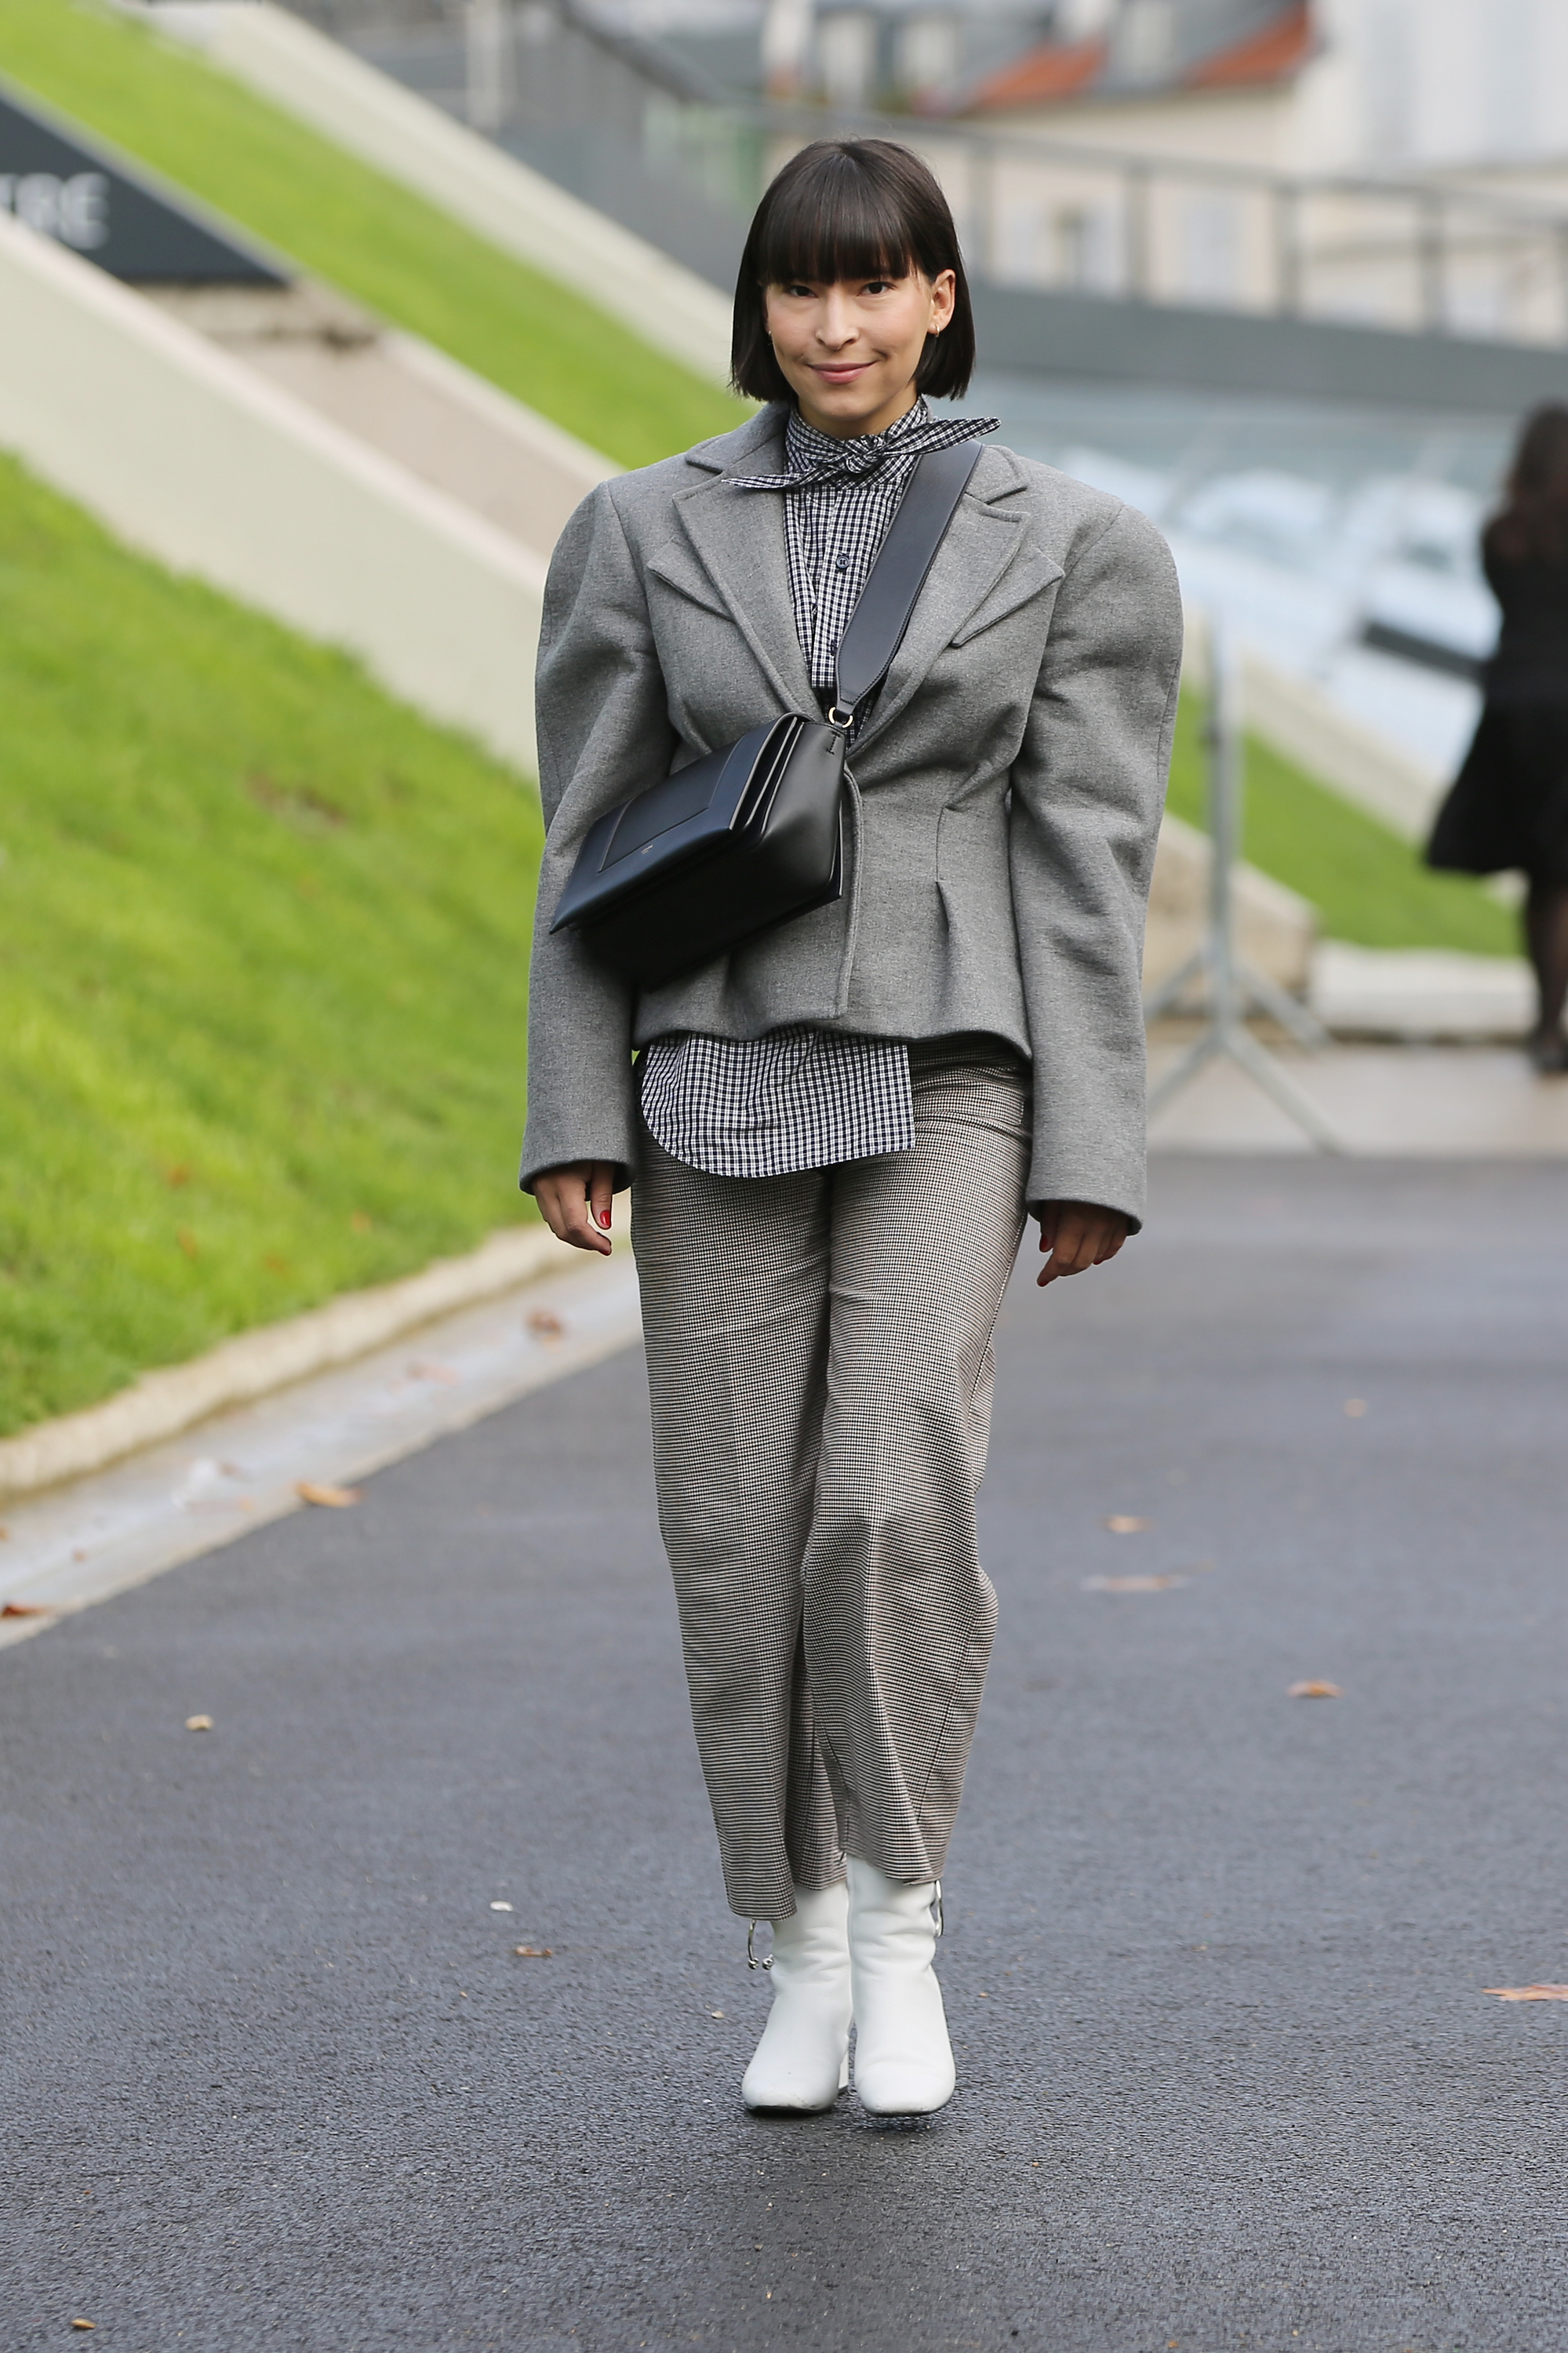 PARIS, FRANCE - SEPTEMBER 30: Fashion buyer, Clara Cornet, seen during Paris Fashion Week Womenswear Spring/Summer 2018 on September 30, 2017 in Paris, France. (Photo by Mireya Acierto/Getty Images)